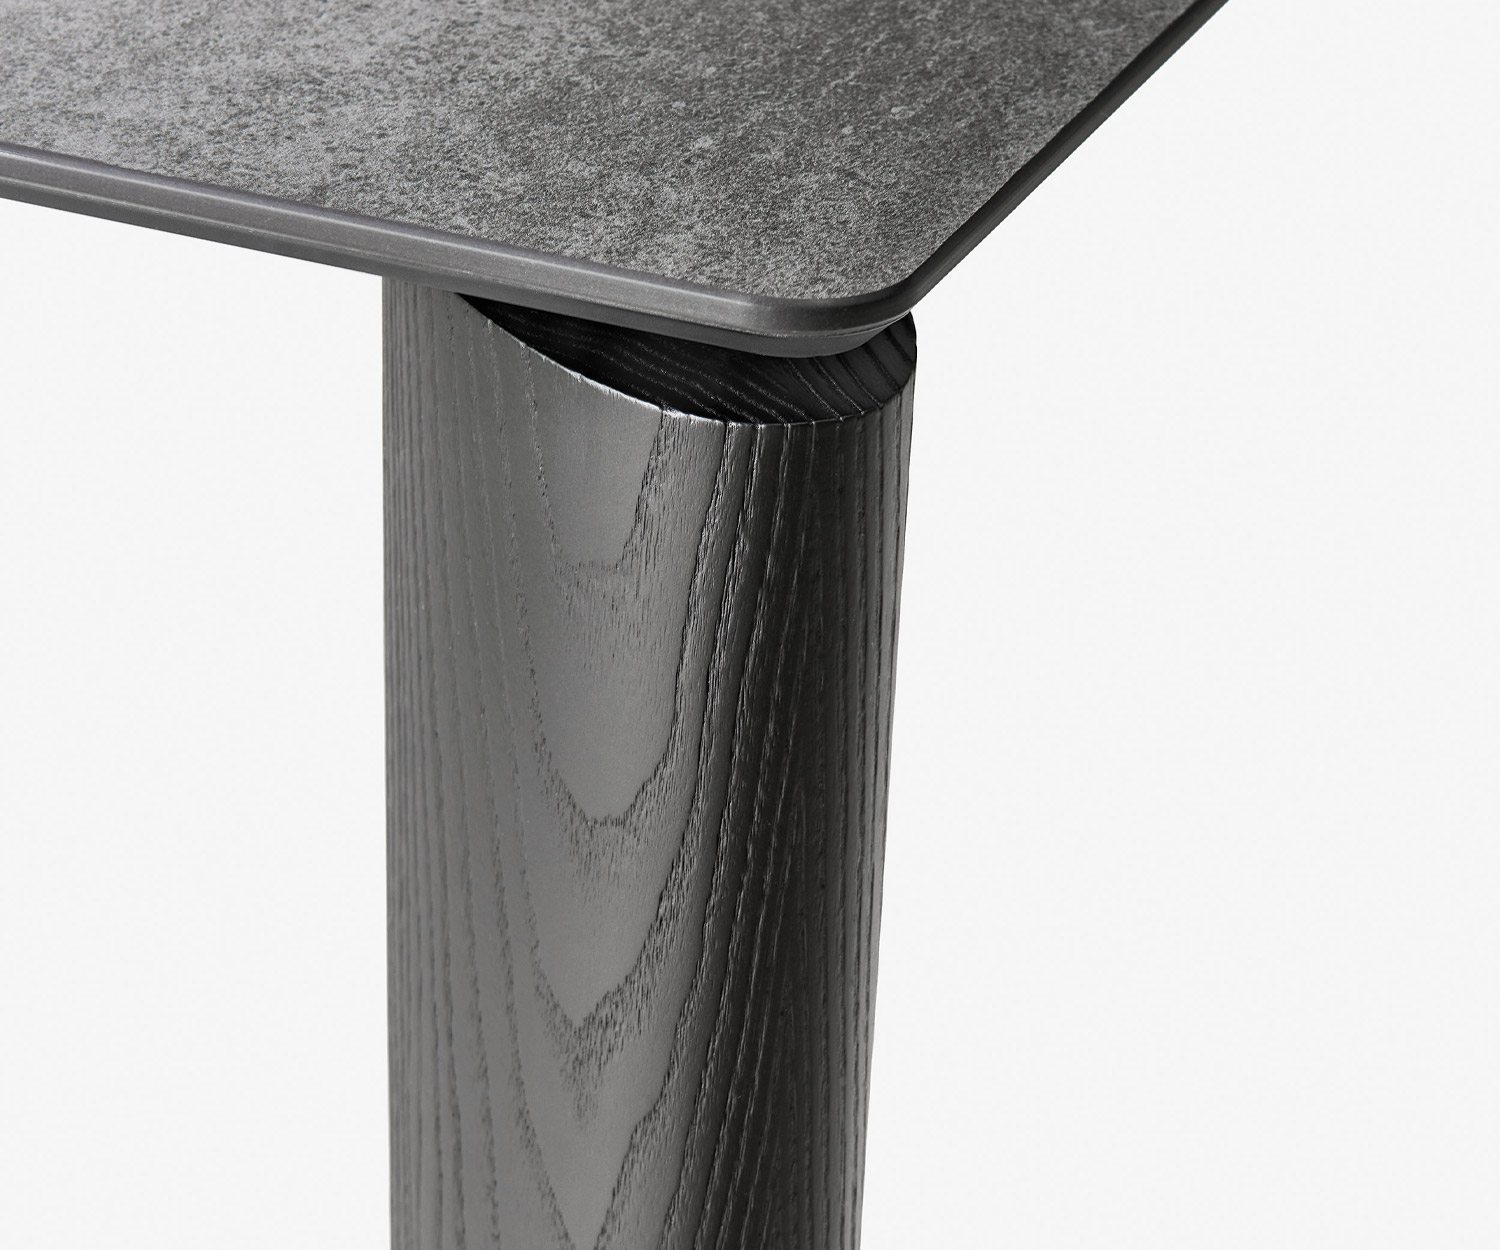 Tavolo da pranzo allungabile Livitalia Desco design in dettaglio la gamba del tavolo in frassino massiccio